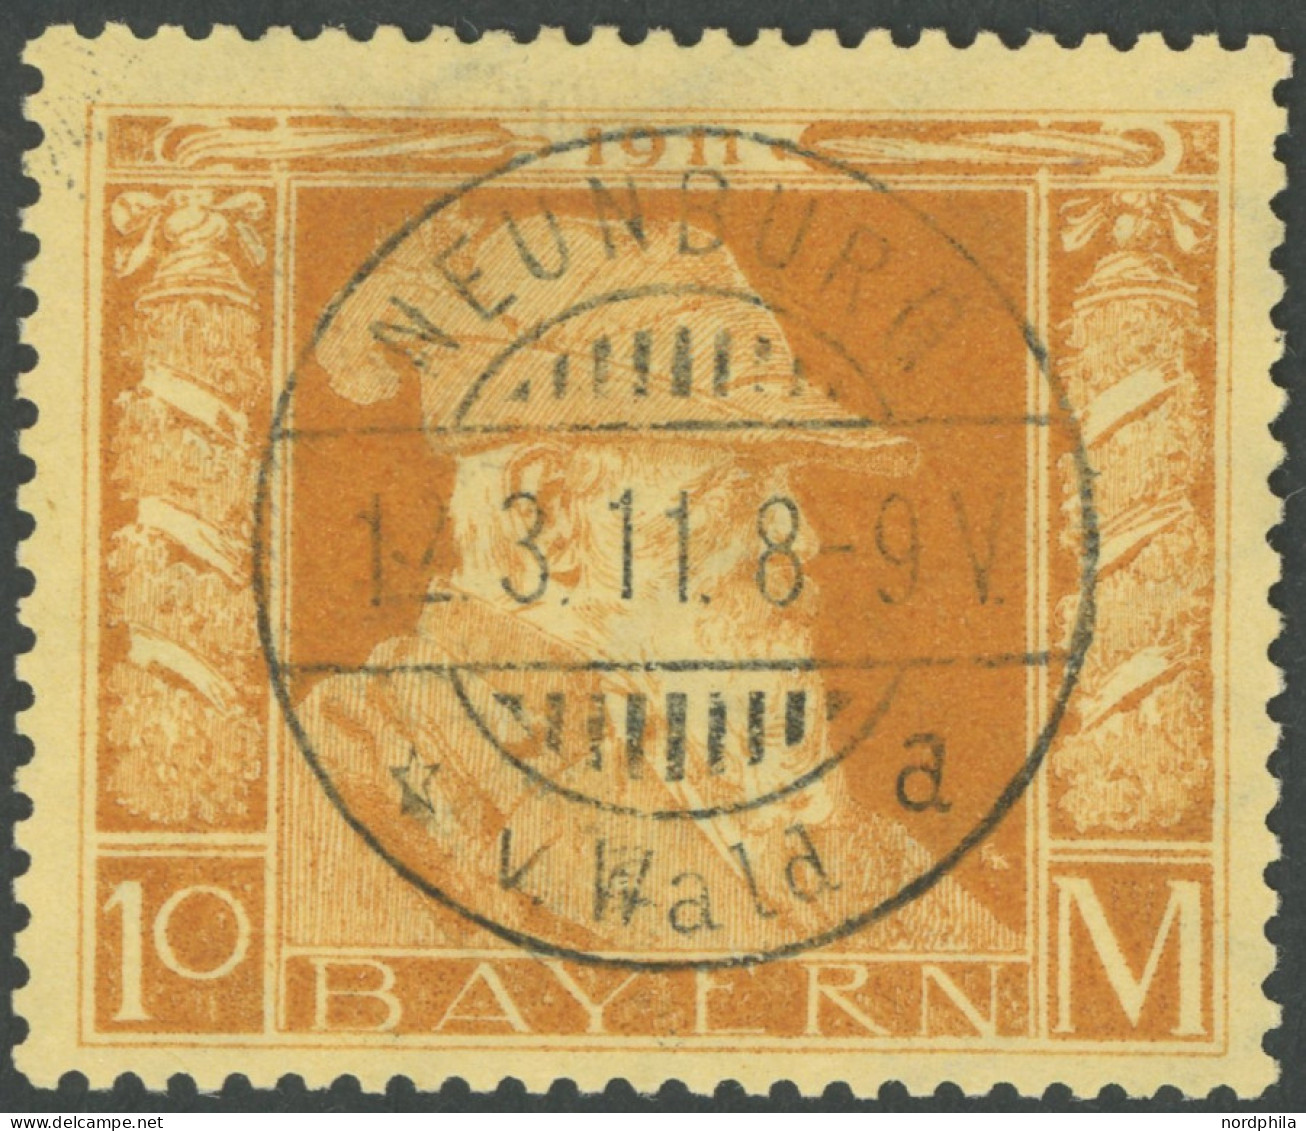 BAYERN 90II O, 1911, 10 M. Luitpold, Type II, Idealer Stempel NEUENBURG V. WALD, Pracht, Mi. 400.- - Usados